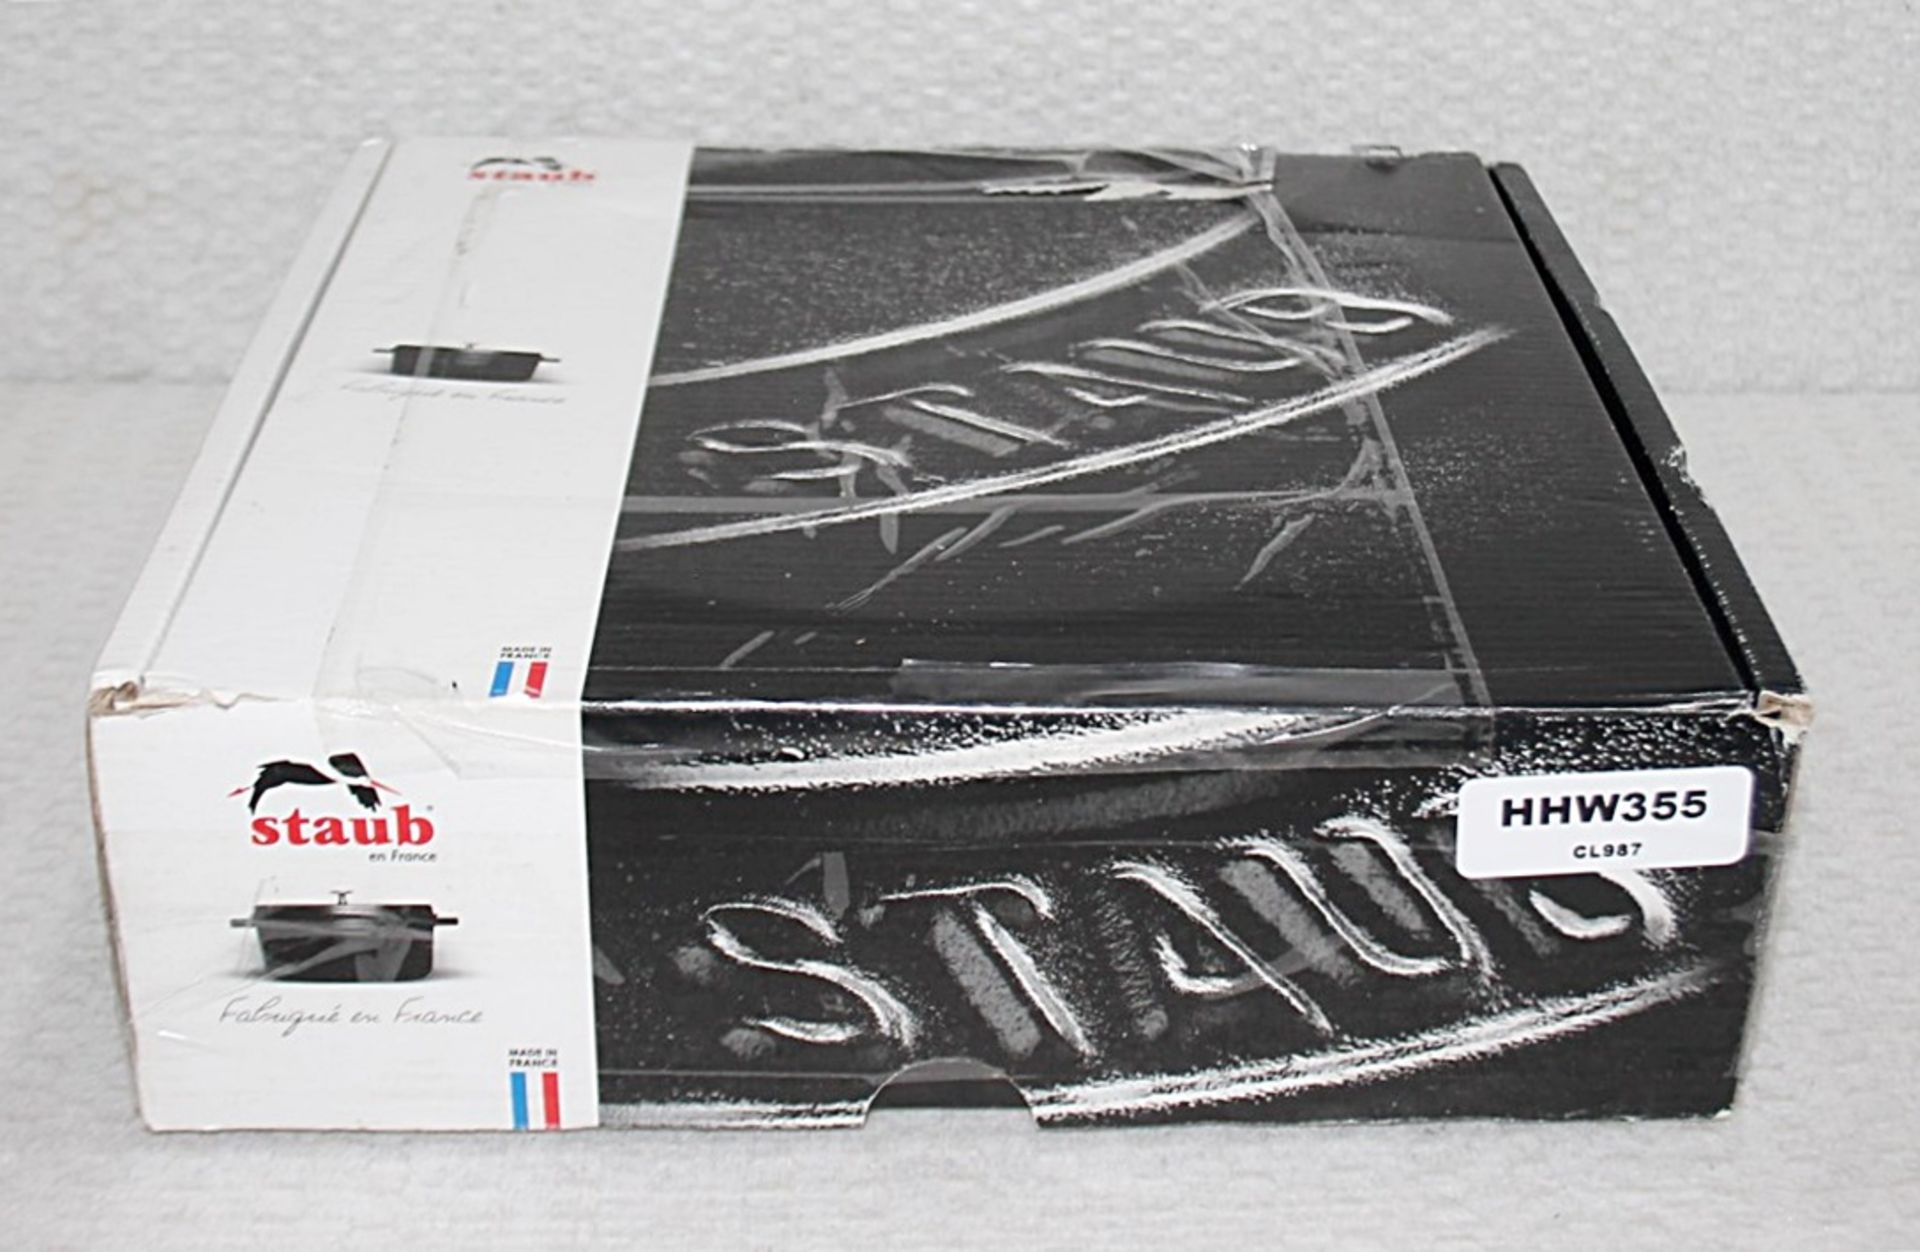 1 x STAUB Black Round Chistera Braiser Sauté Pan (24cm) - Original Price £199.00 - Unused Boxed - Image 4 of 9